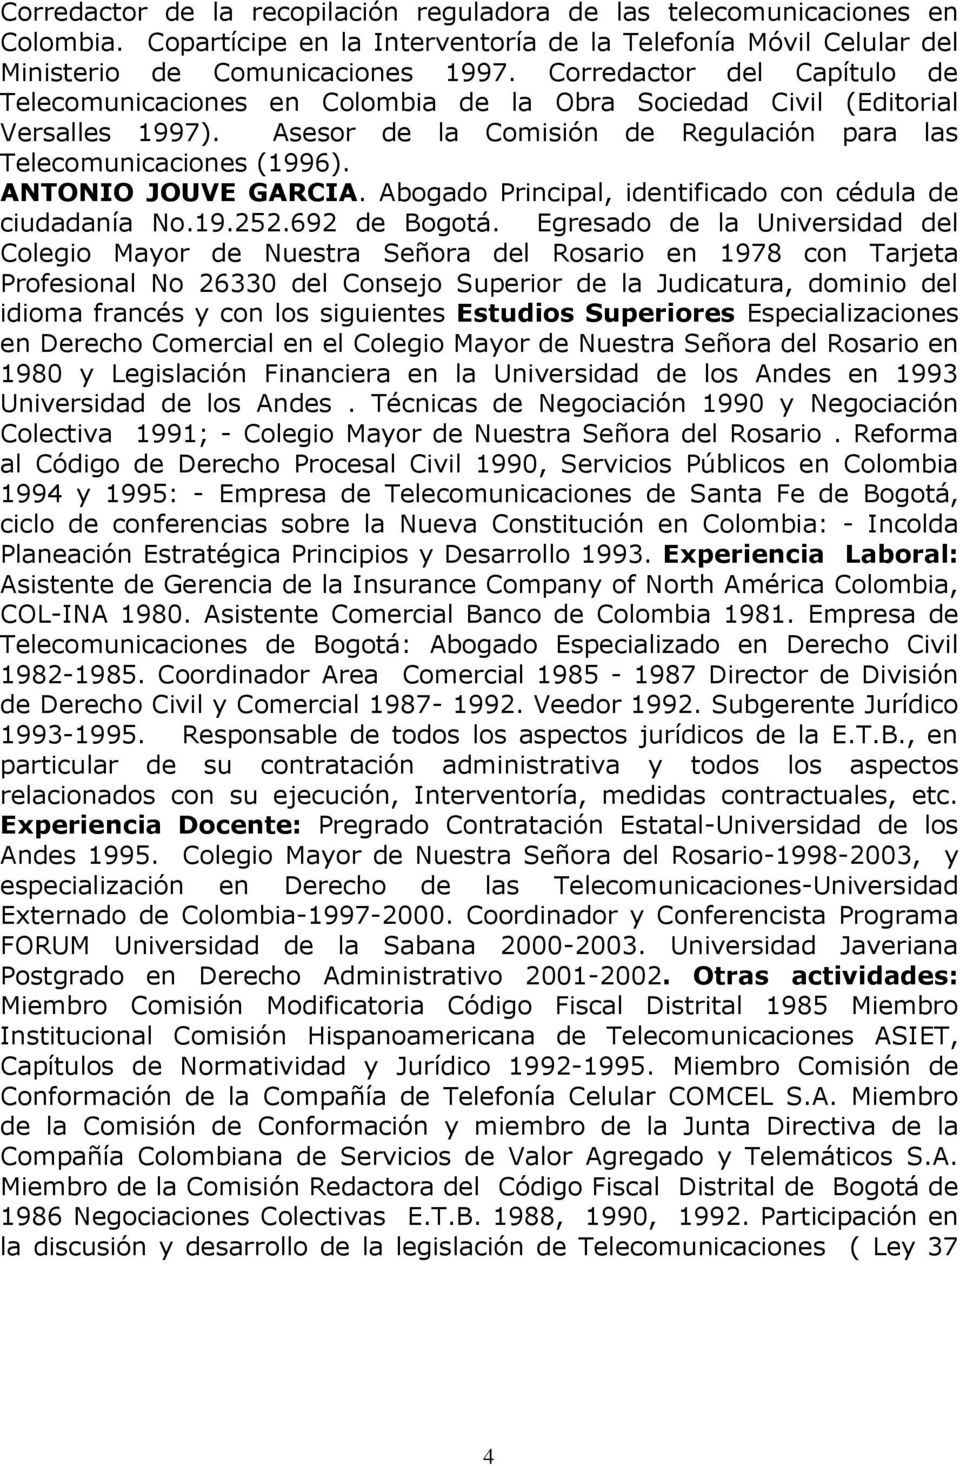 ANTONIO JOUVE GARCIA. Abogado Principal, identificado con cédula de ciudadanía No.19.252.692 de Bogotá.